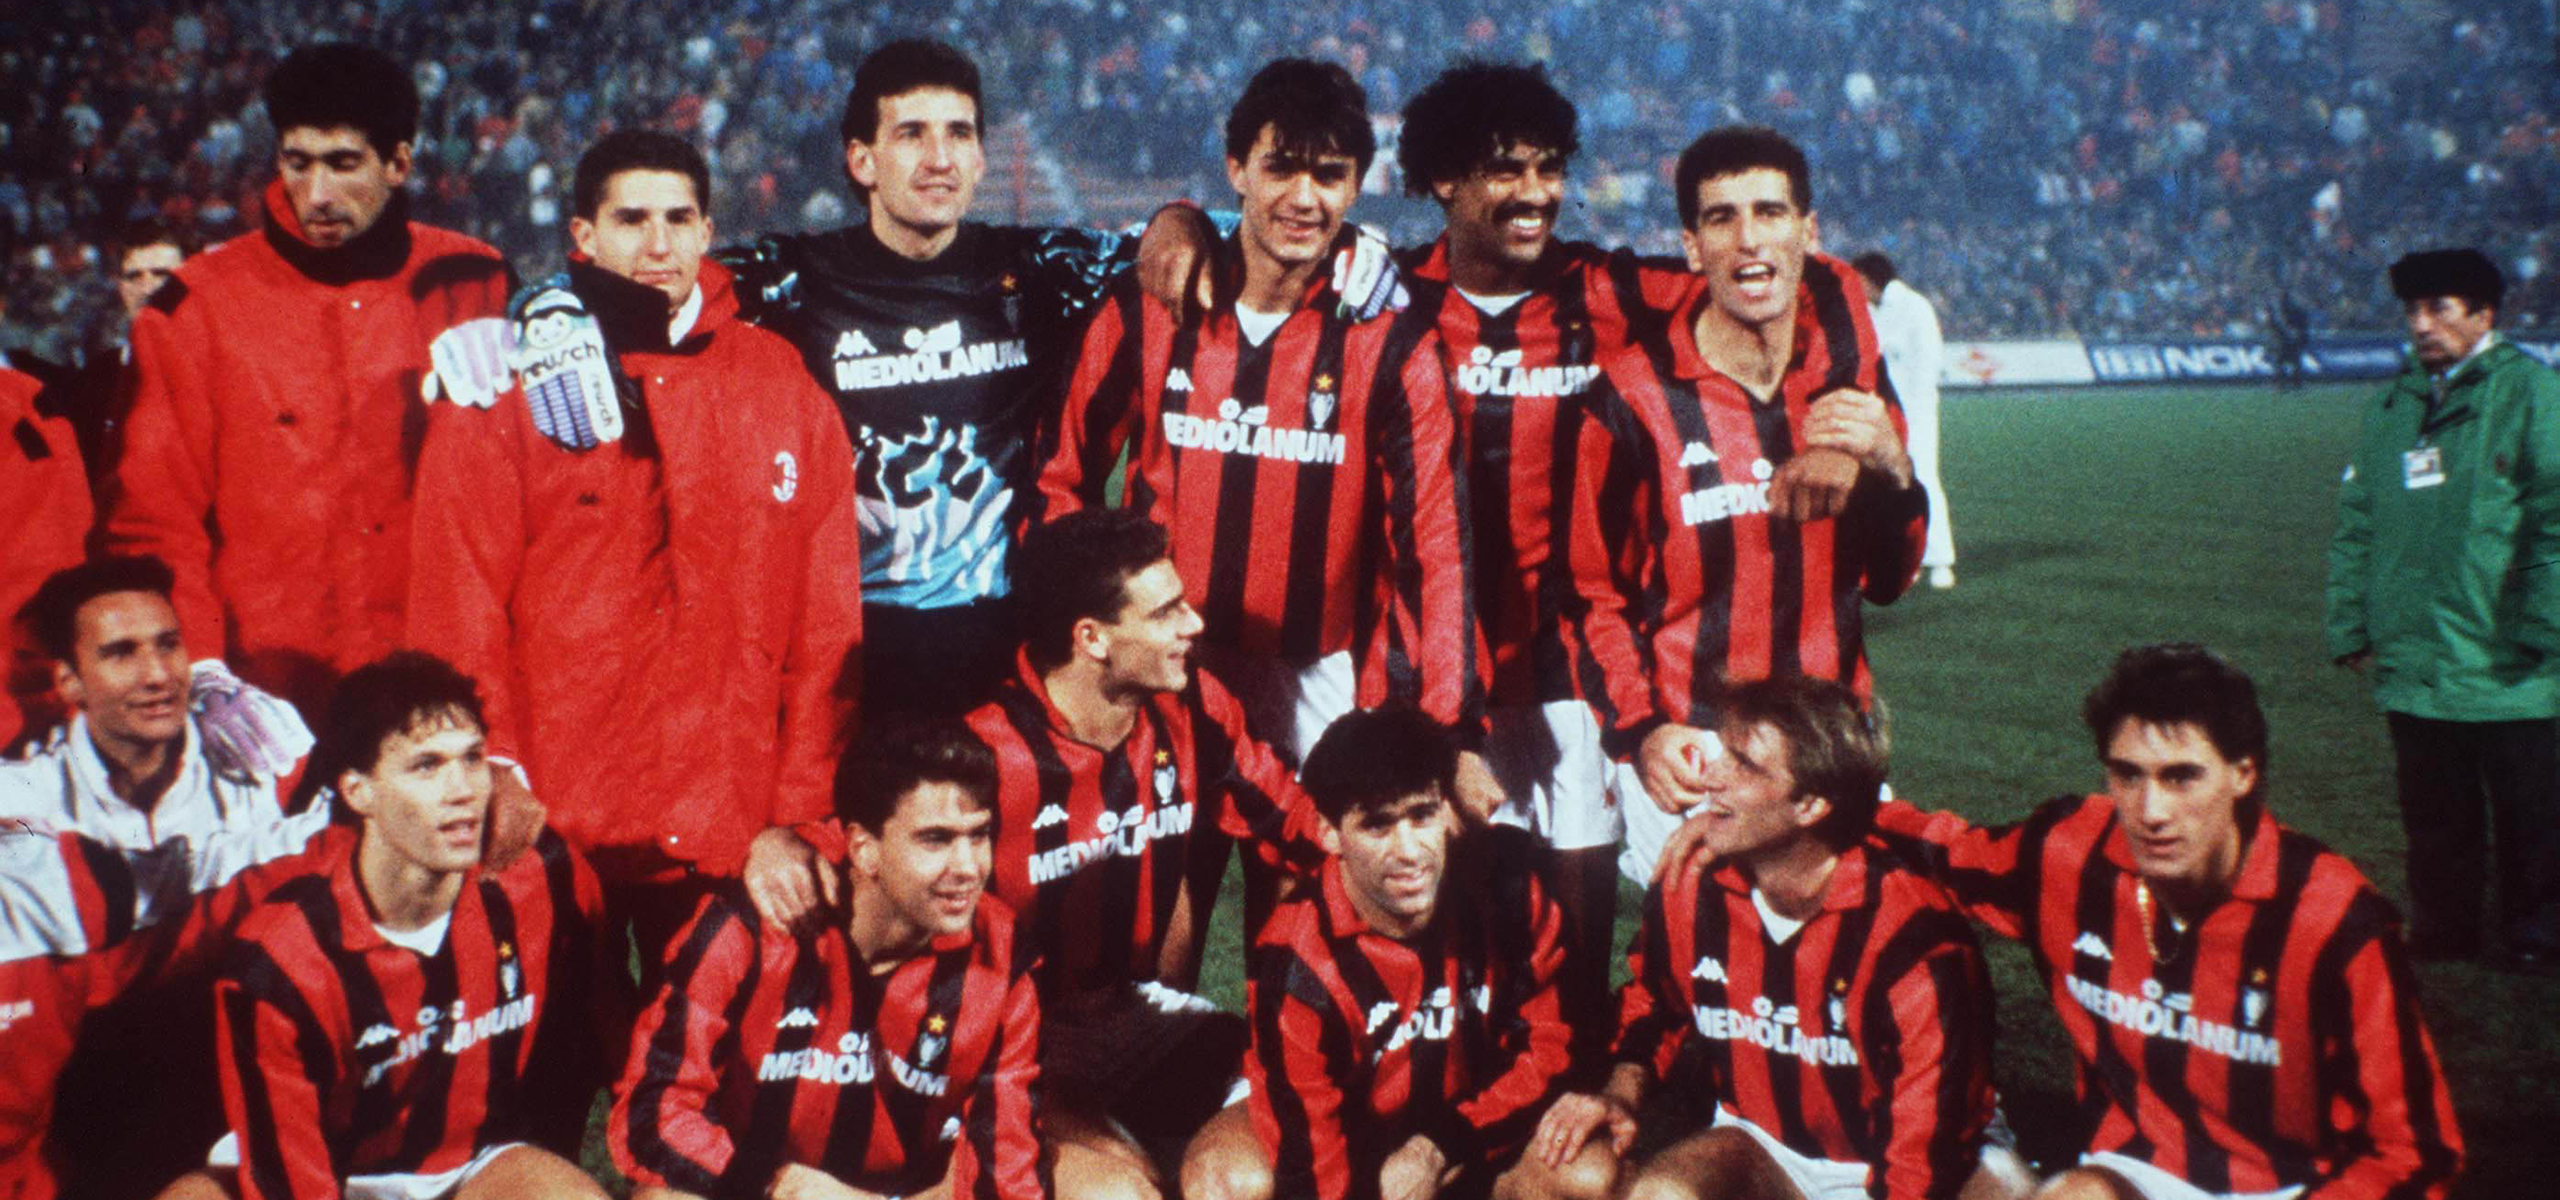 1989 European Super Cup: all details - AC Milan